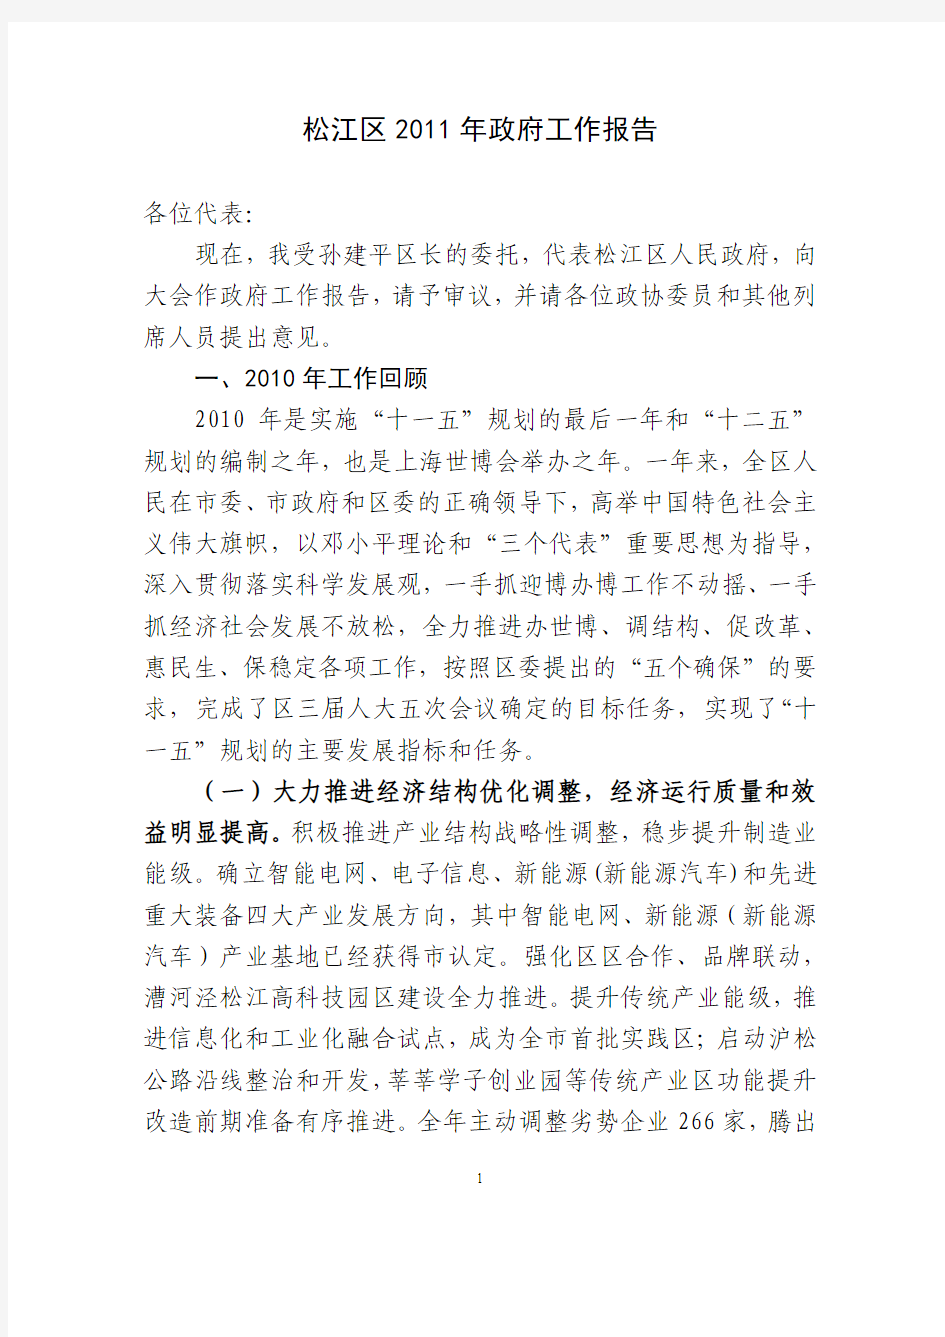 上海市松江区2011年政府工作报告